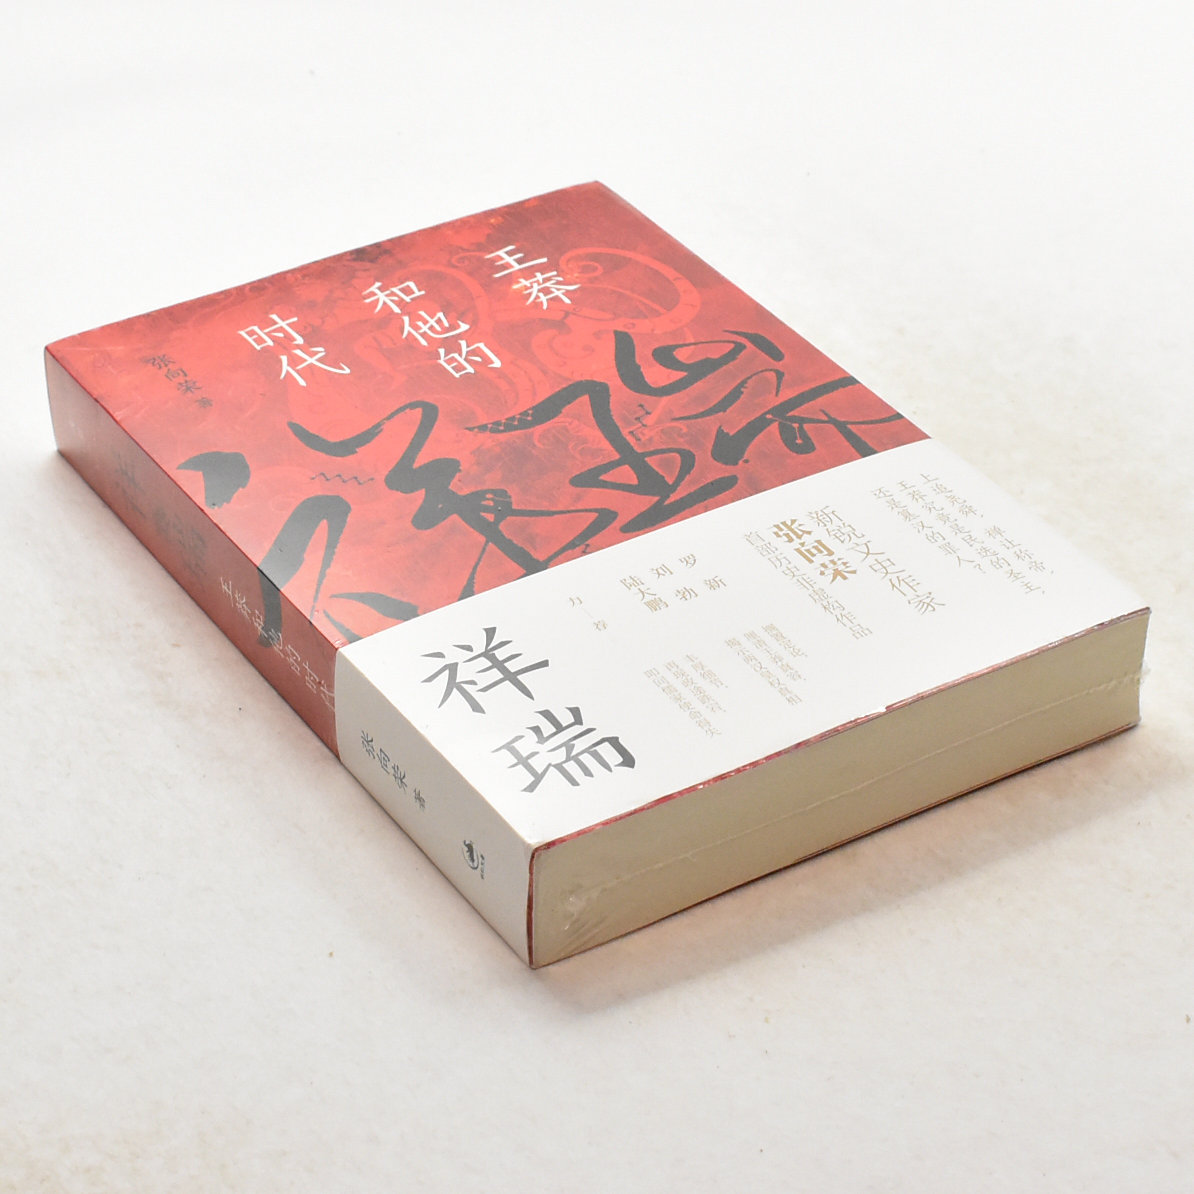 正版祥瑞 作者: 张向荣  出版社: 上海人民出版社 ISBN: 9787208172036售价高于定价